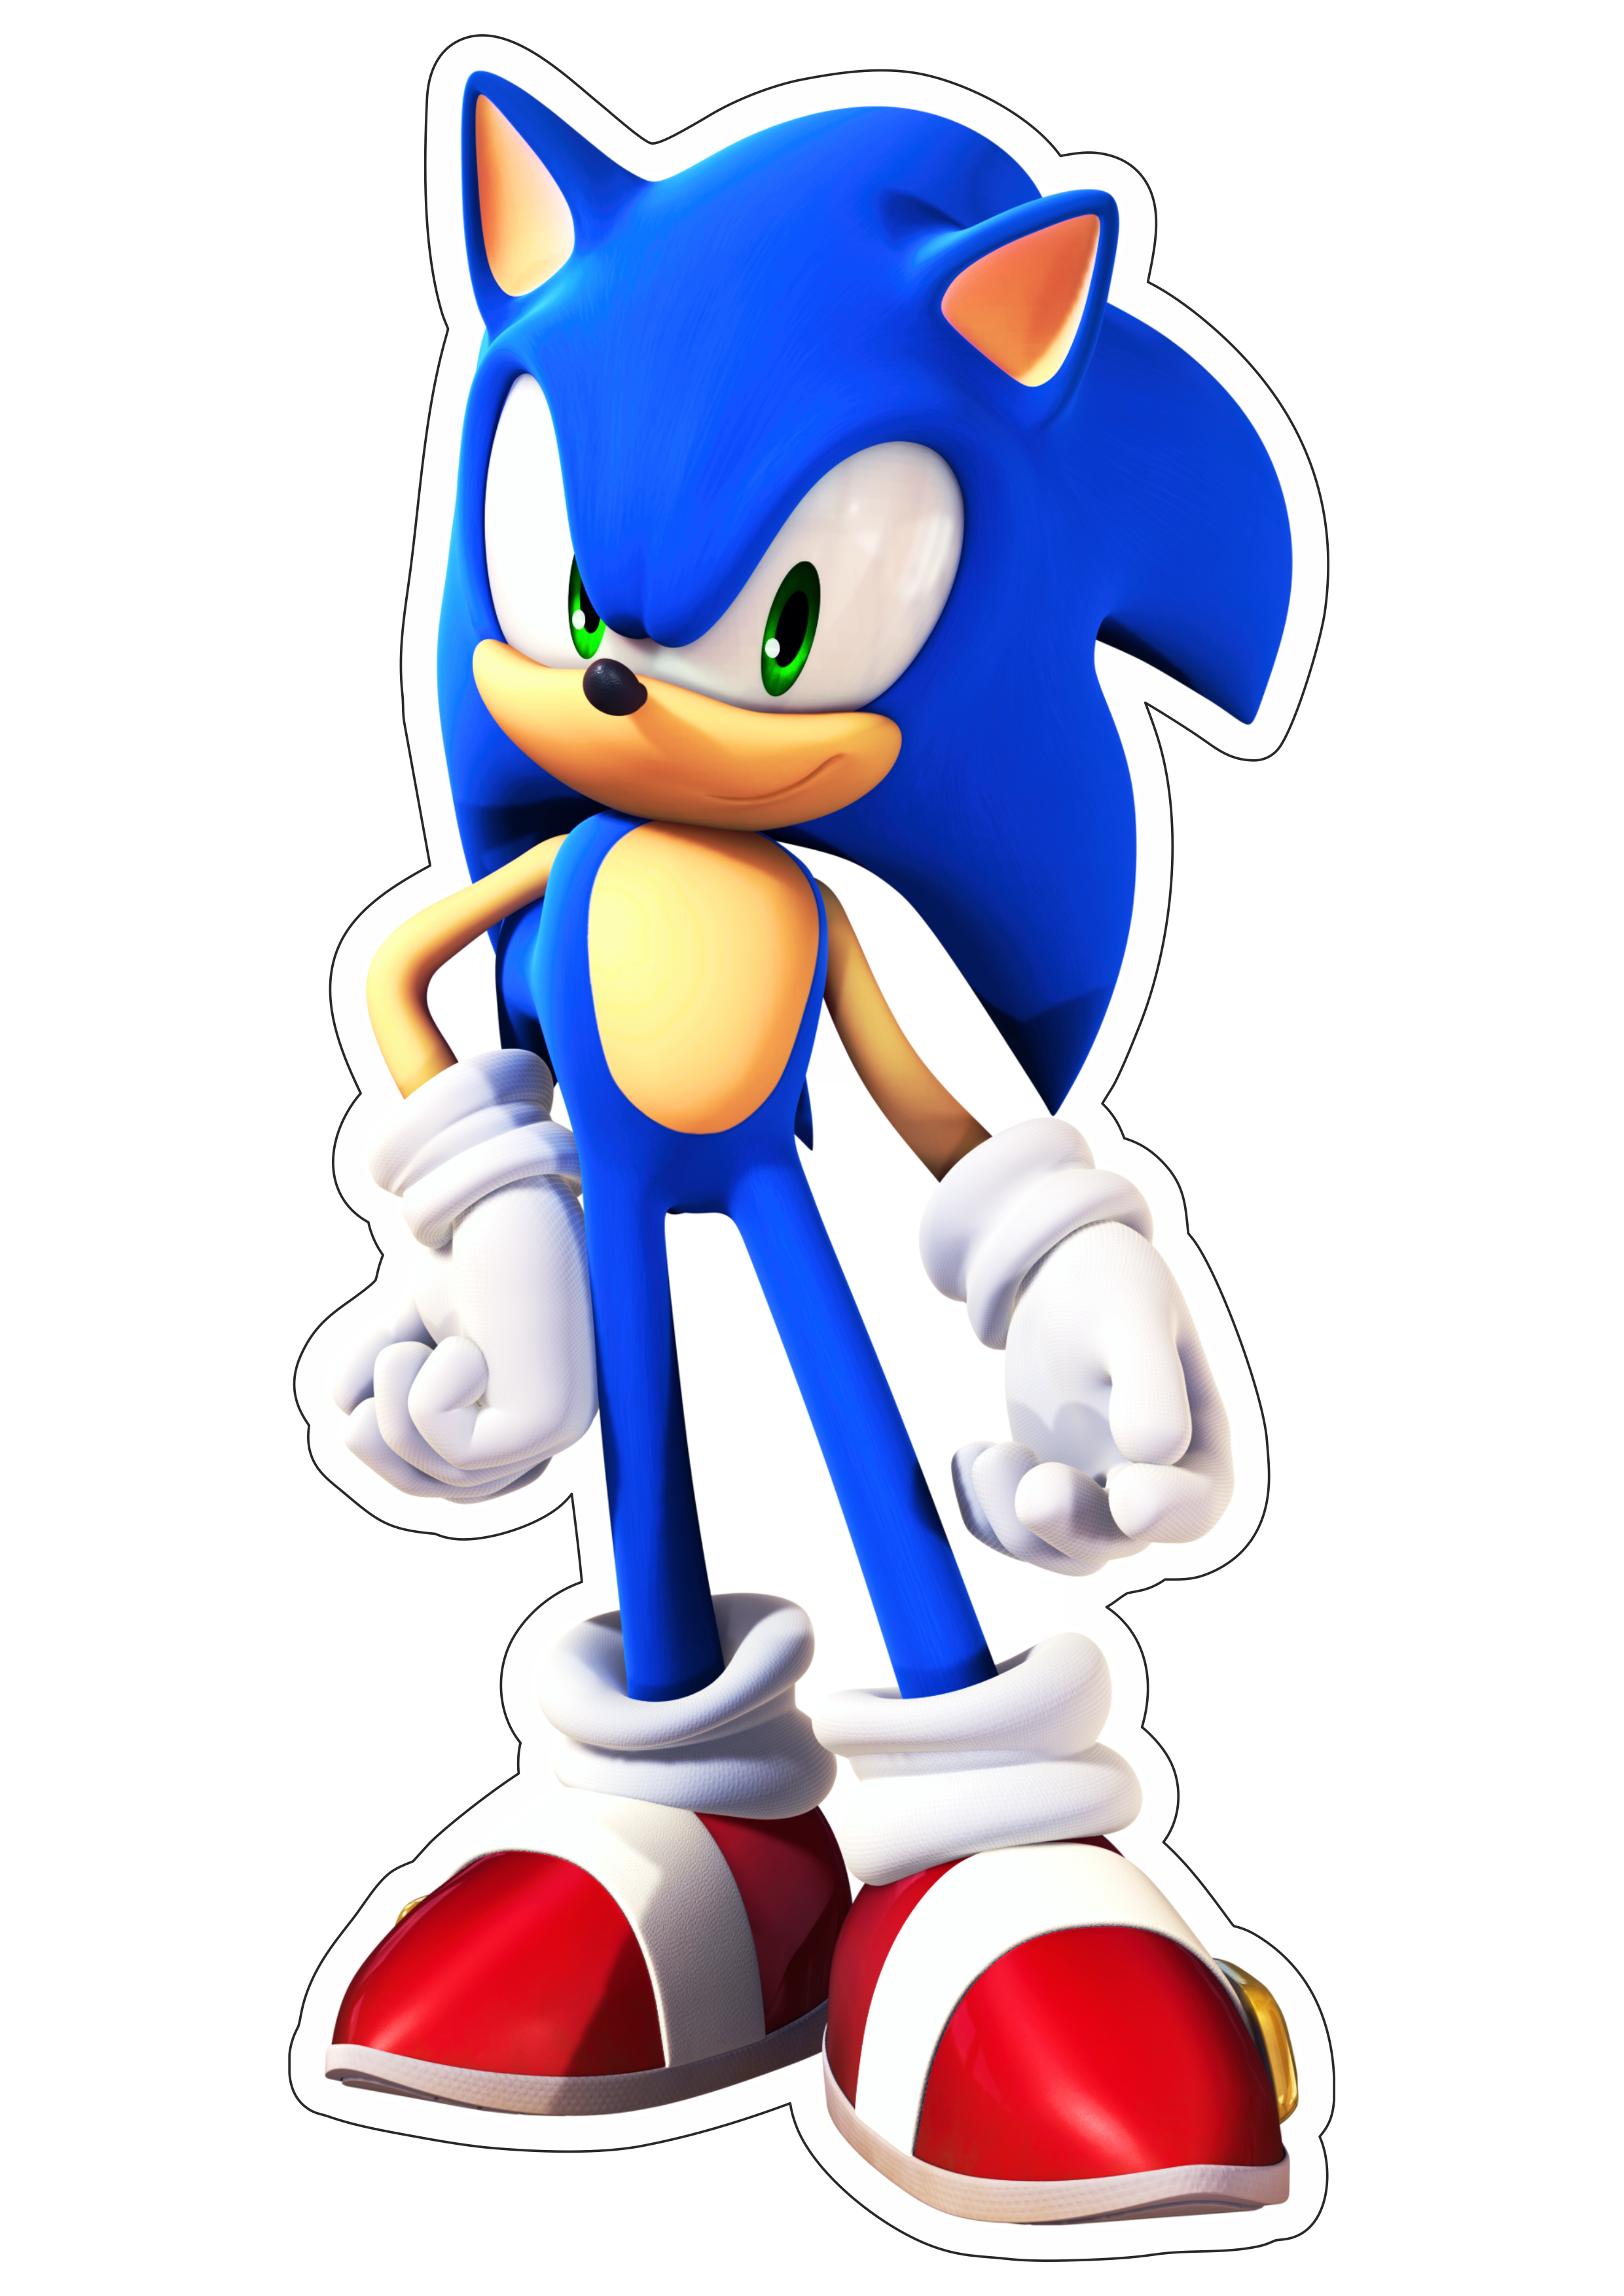 Sonic the hedgehog personagem de game infantil sega imagem sem fundo com contorno artes gráficas png